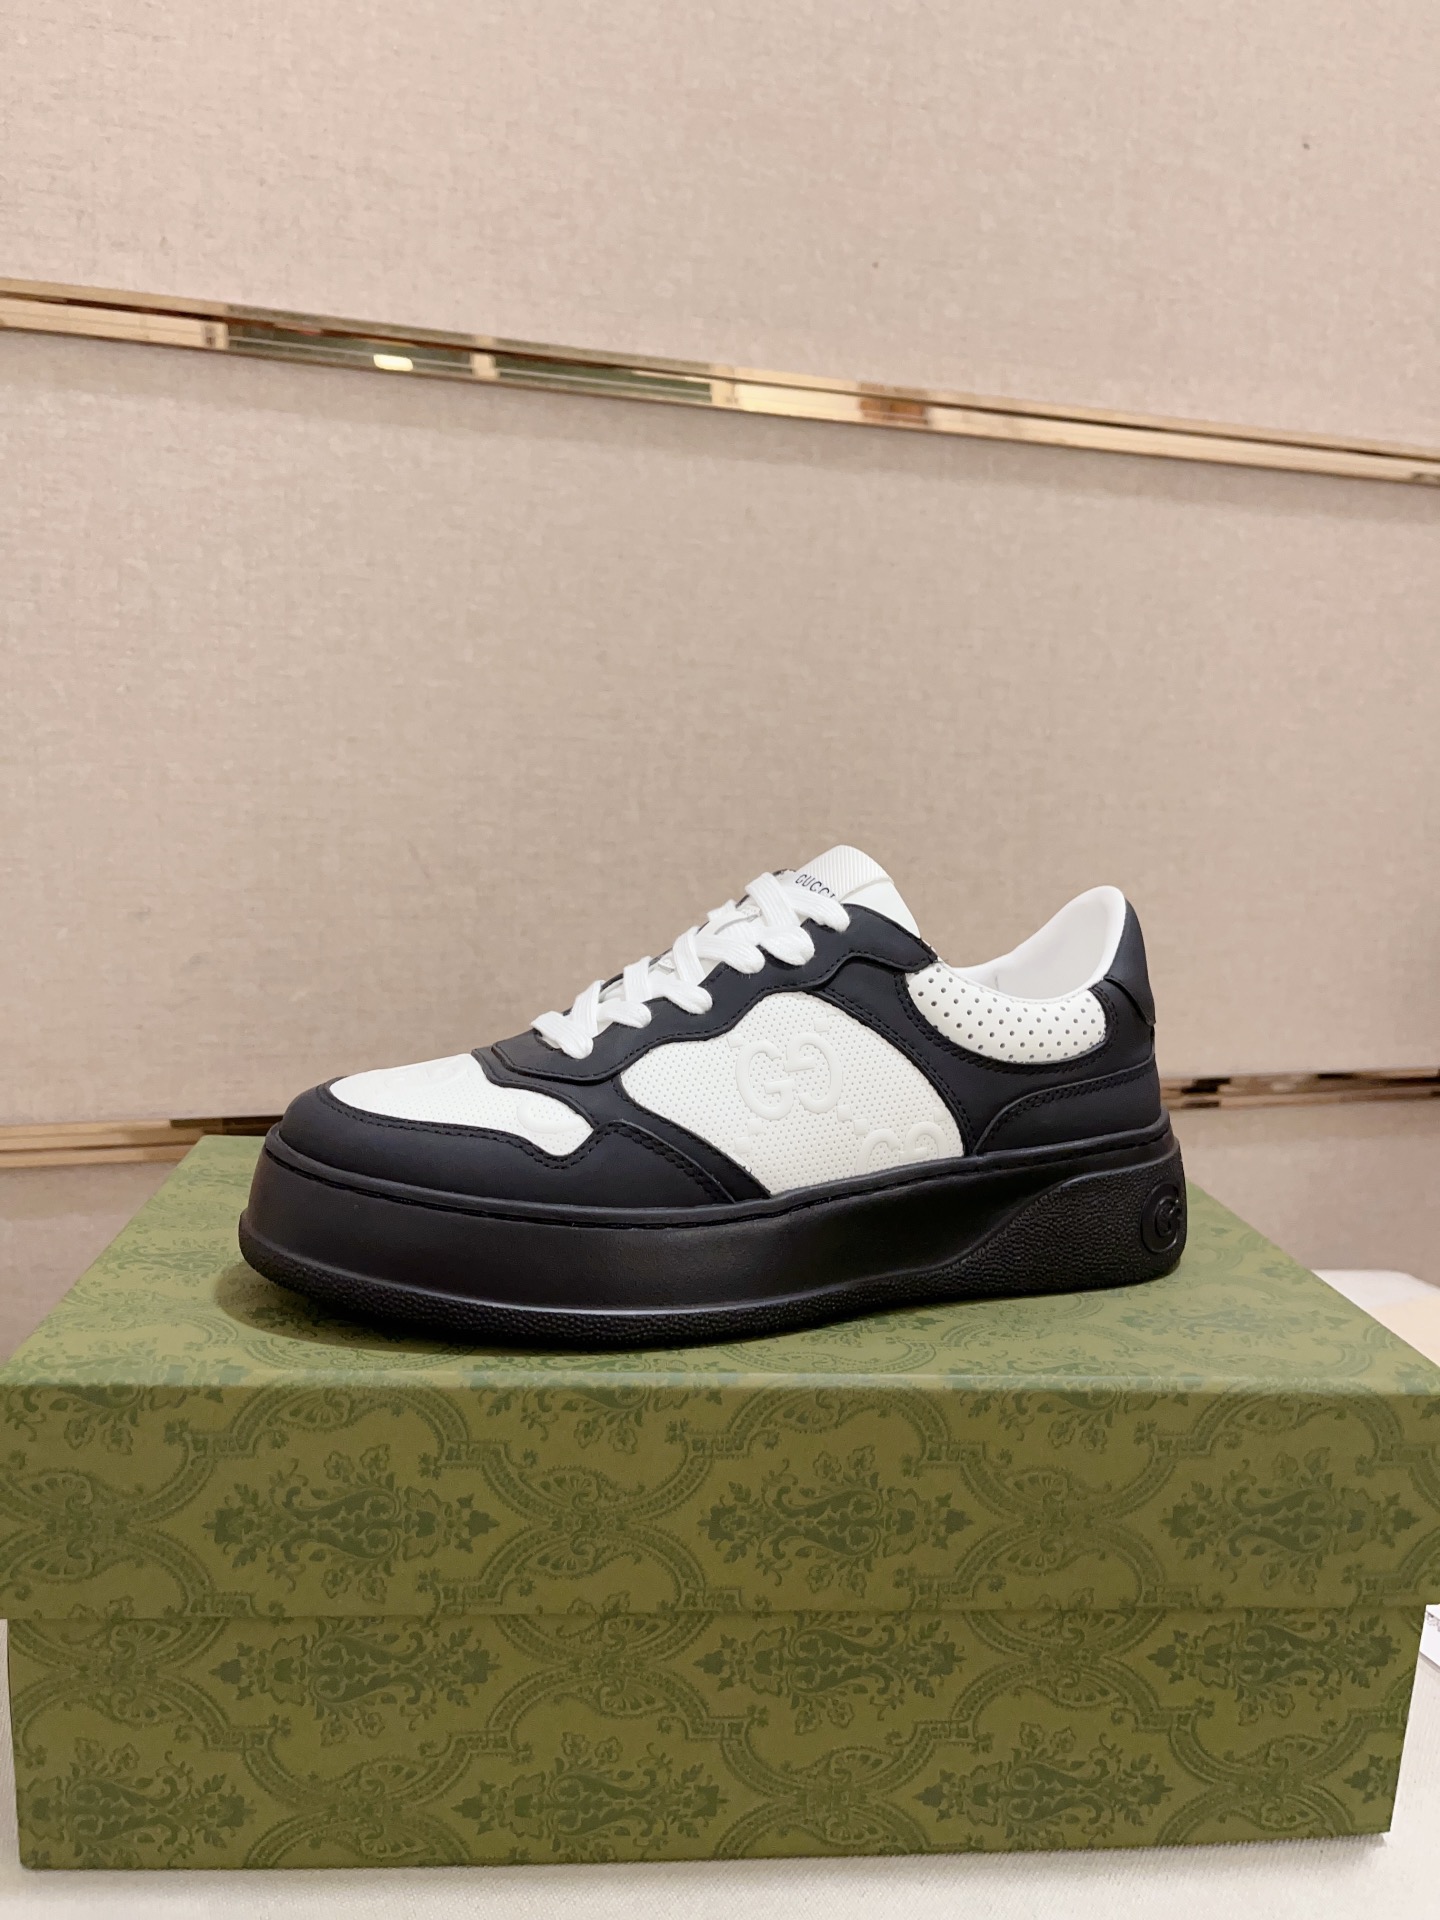 Gucci Zapatos Zapatillas de monopatín Calzado informal Bordado Tejidos Vintage Casual